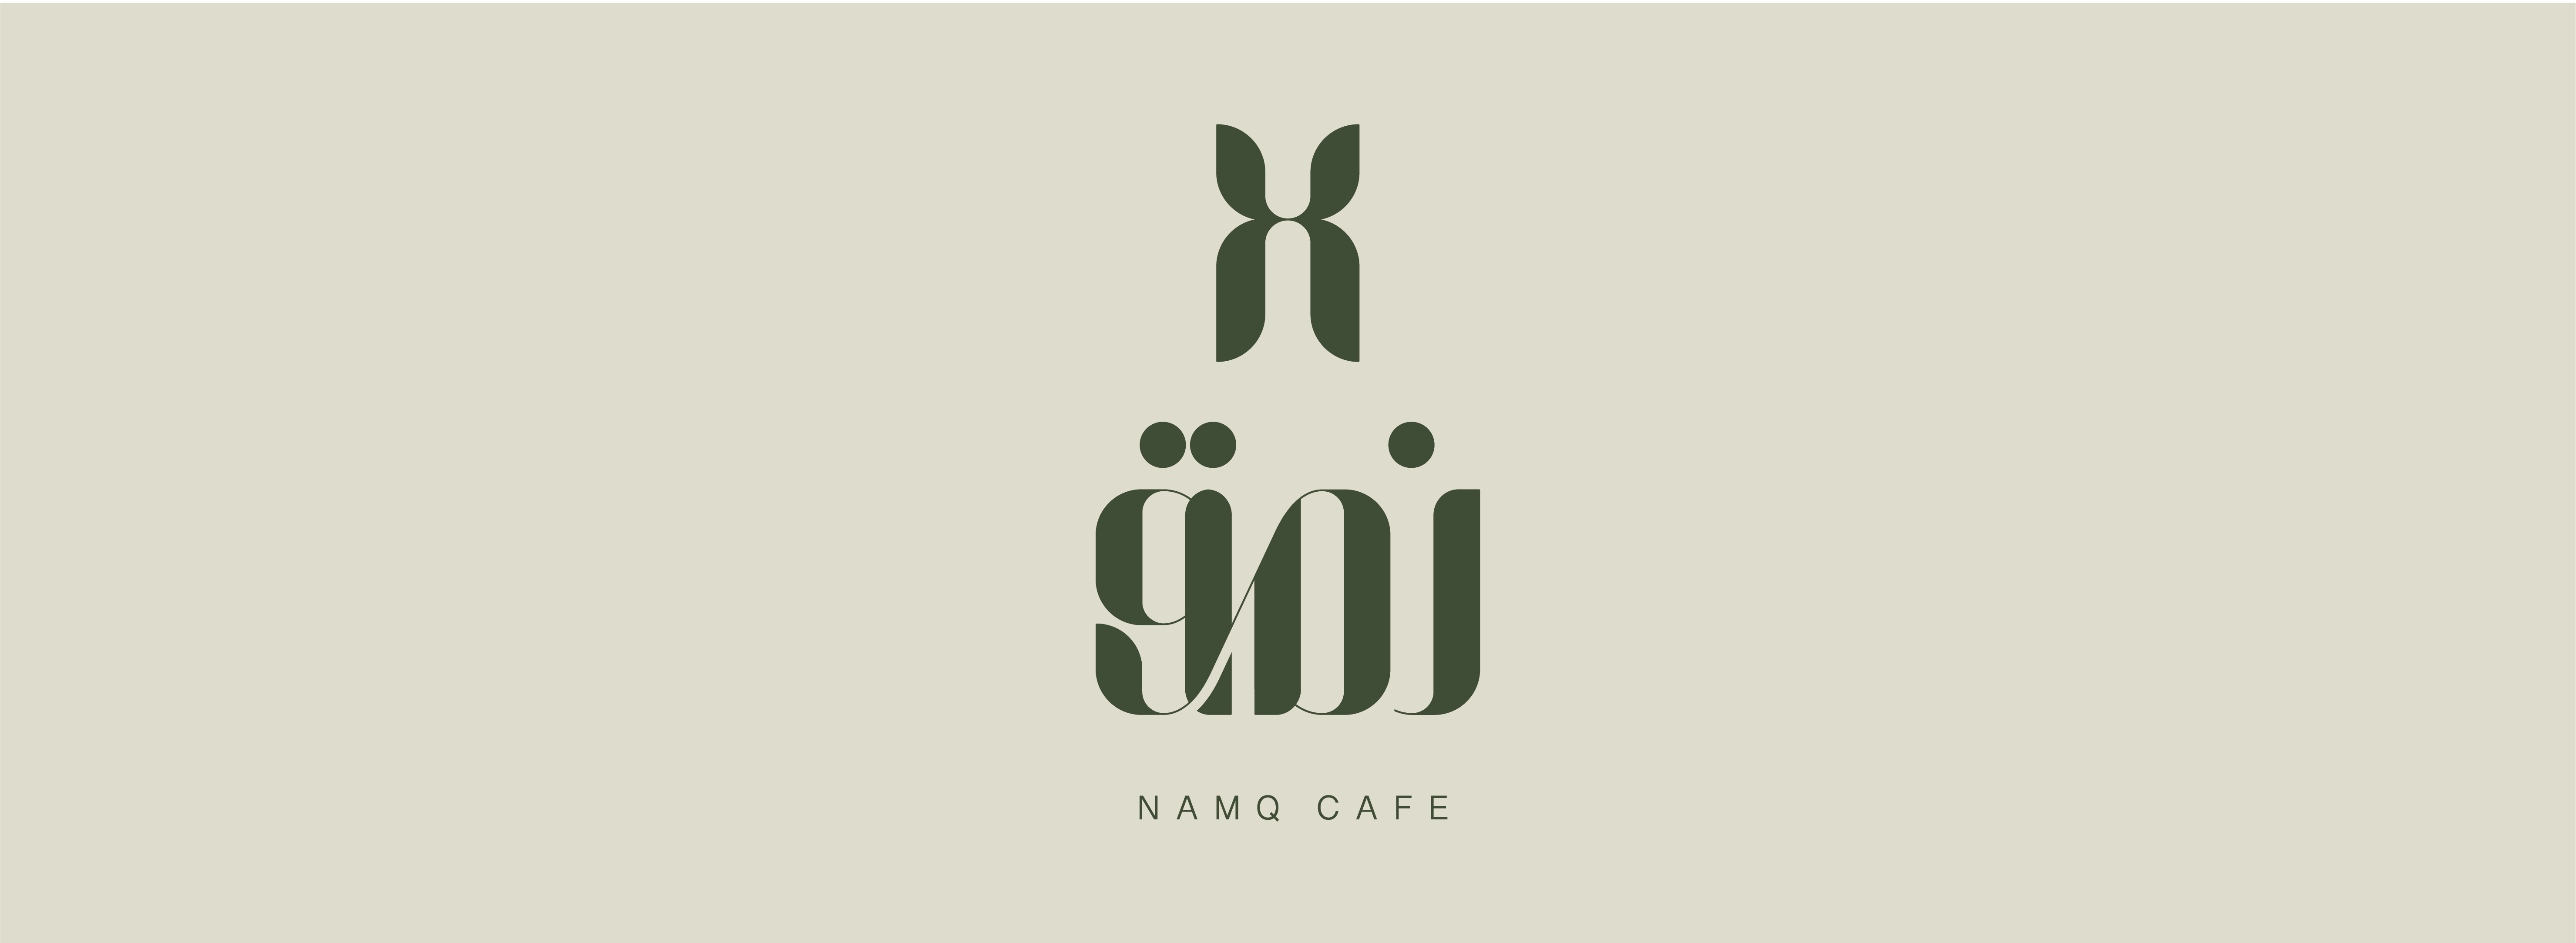 NAMQ CAFĒ